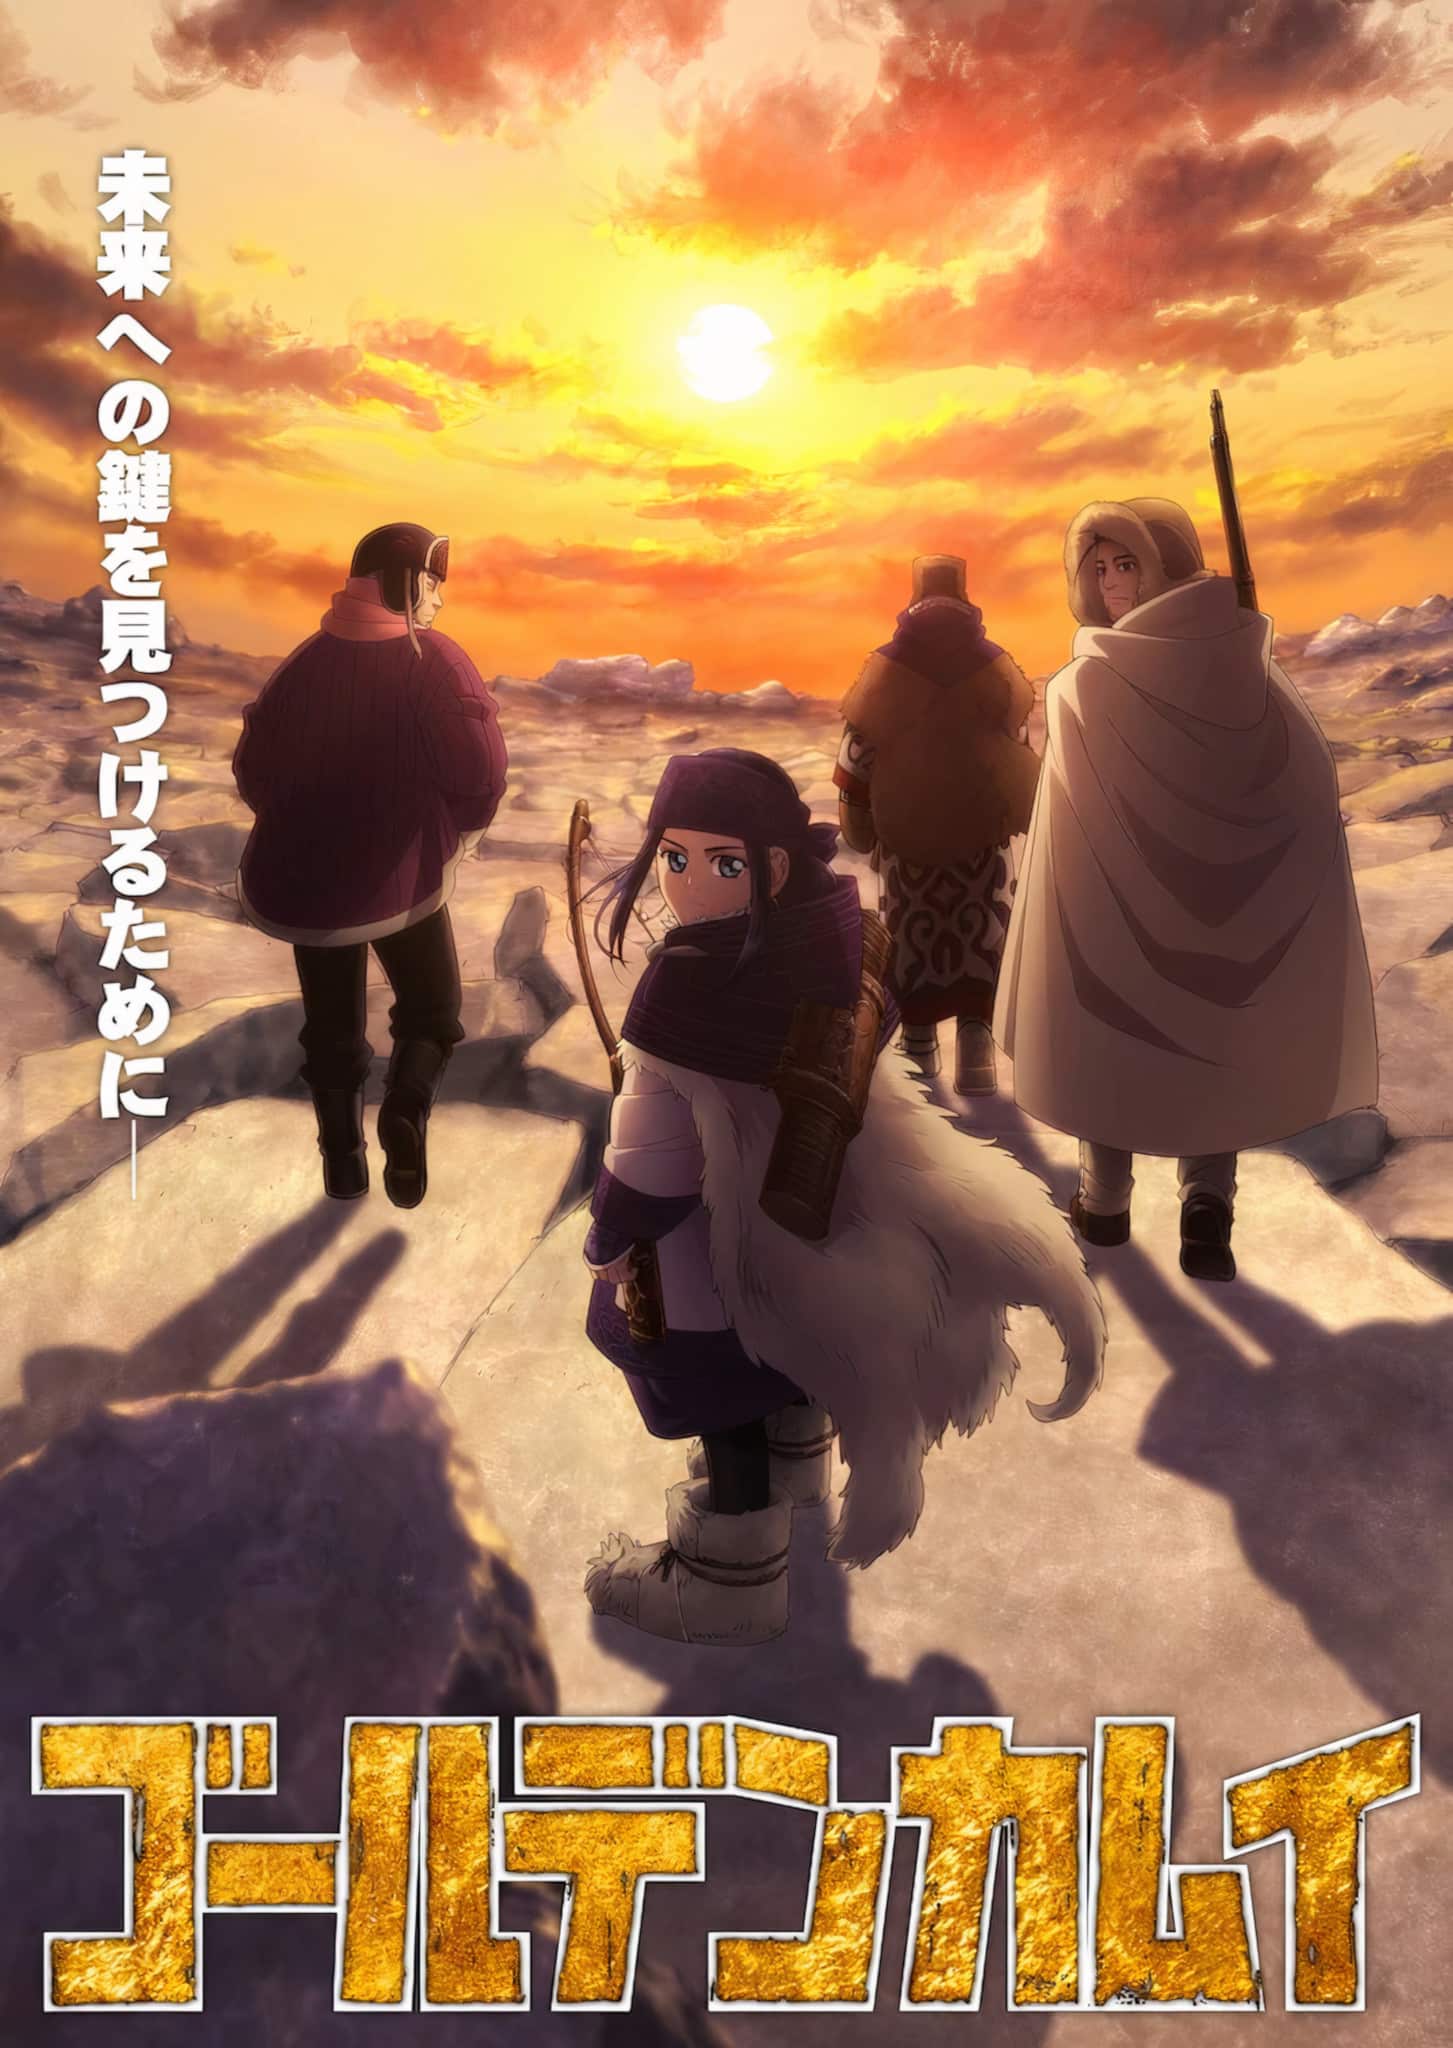 Nouveau visuel pour l'anime Golden Kamui Saison 3